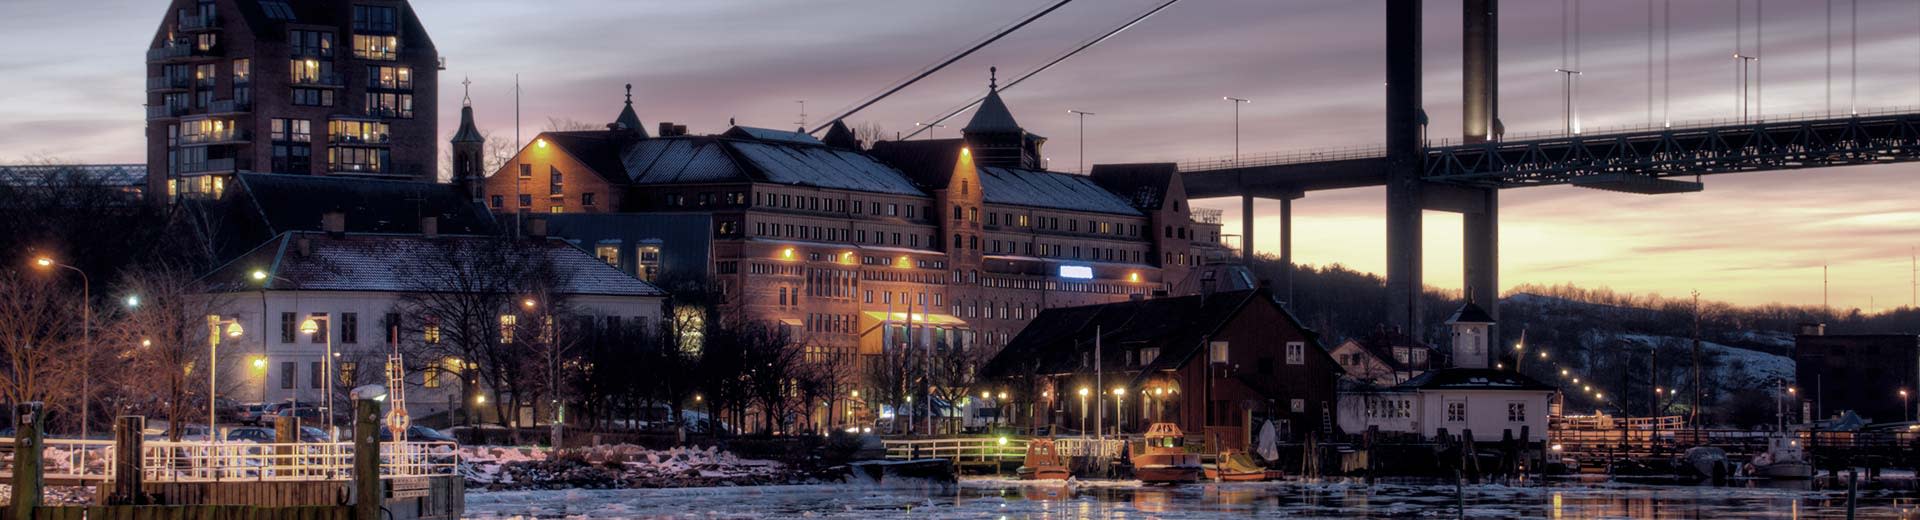 Edificios históricos a lo largo de las orillas de Gotemburgo por la noche.